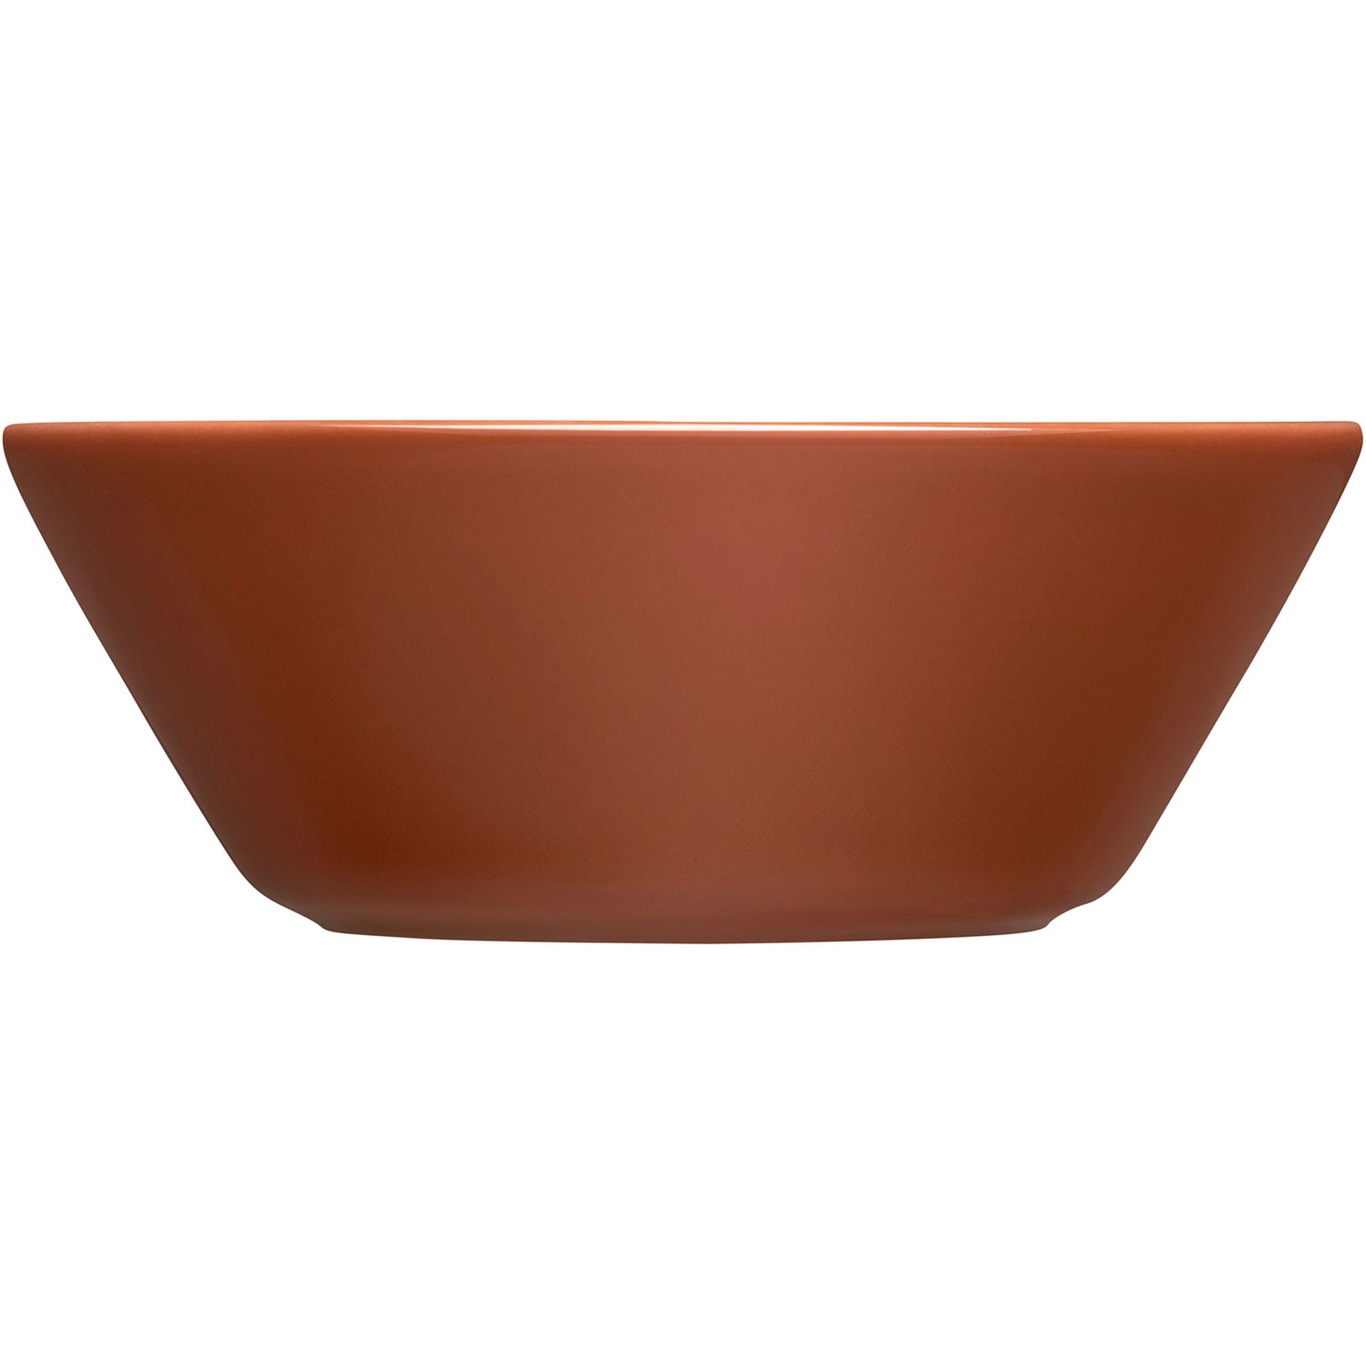 Teema Bowl 15 cm, Vintage Brown